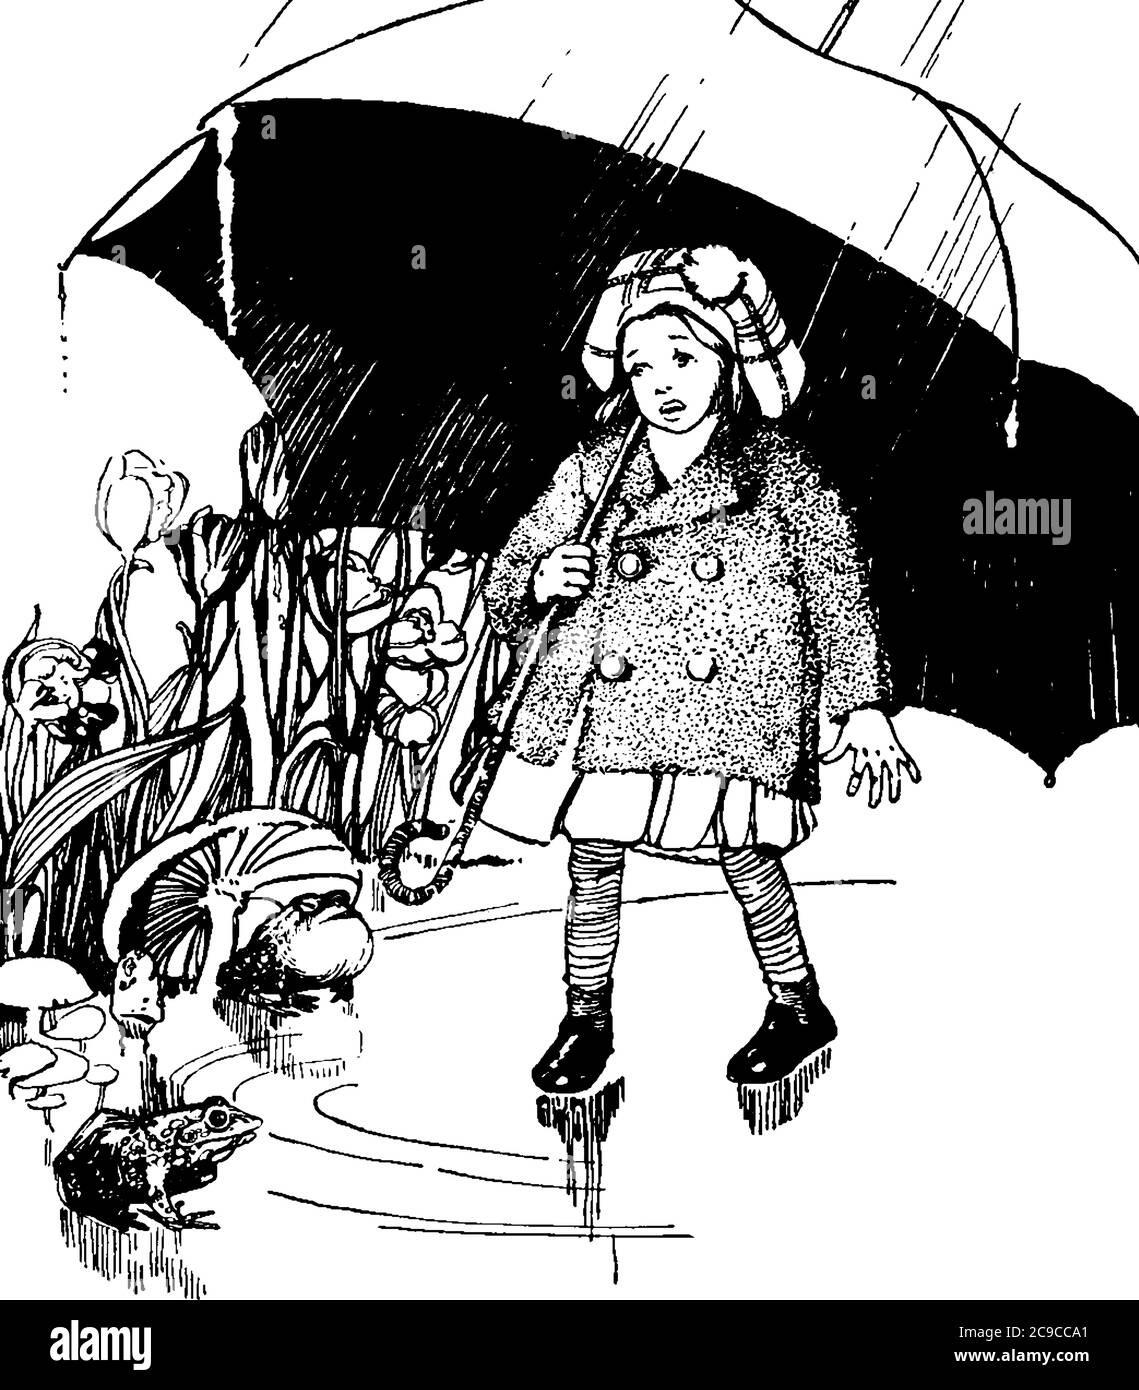 Una bambina che cammina nei sentieri del campo, sotto un ombrello, disegno di linea vintage o illustrazione di incisione. Illustrazione Vettoriale